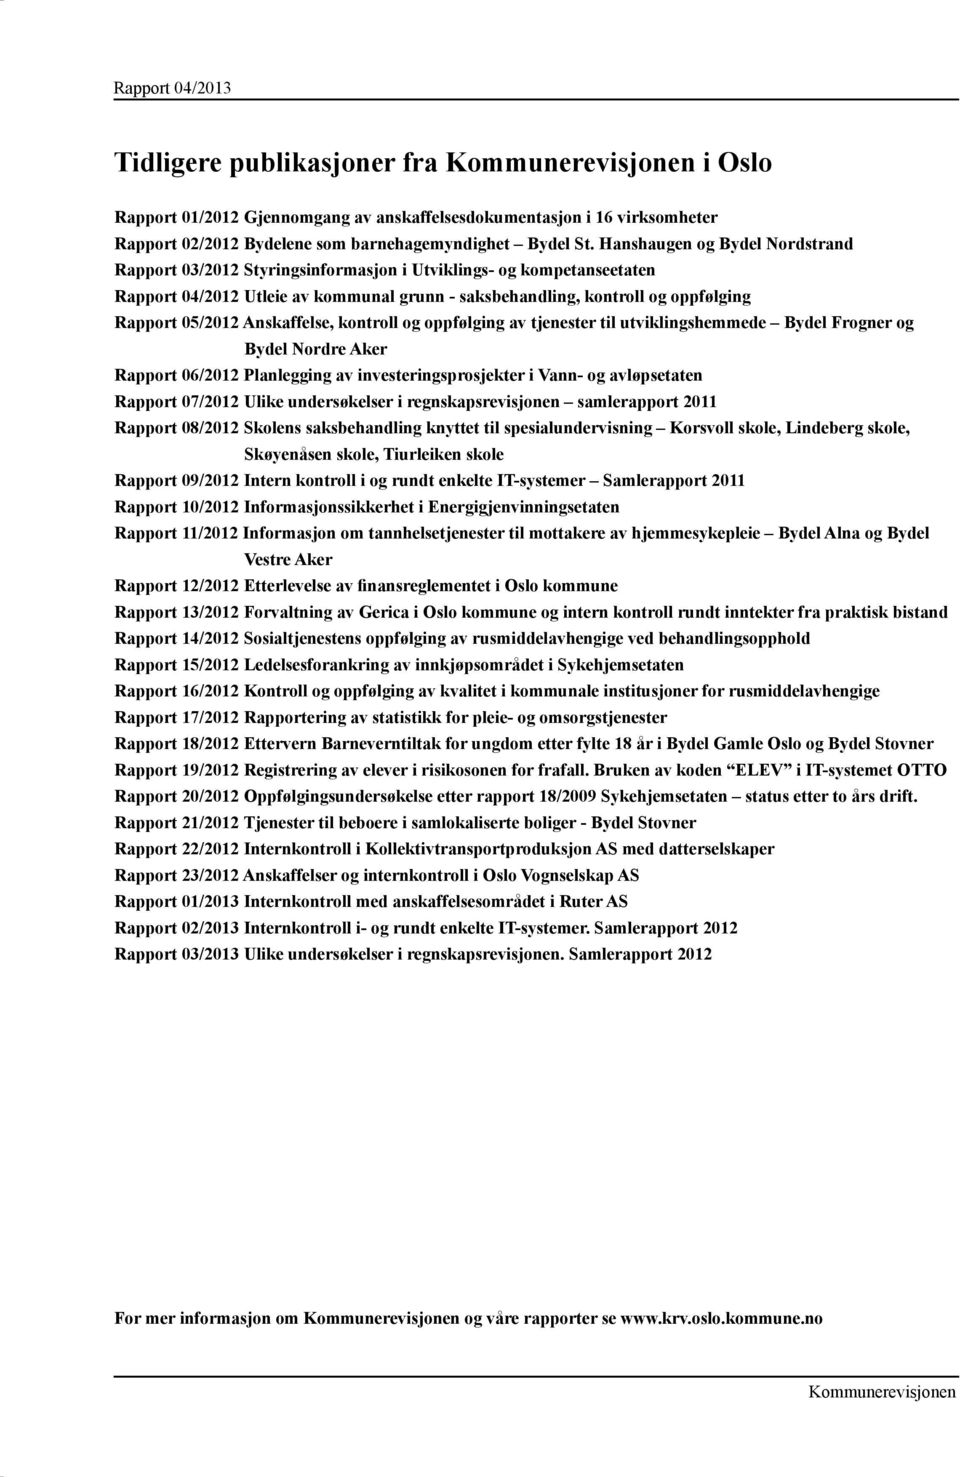 Anskaffelse, kontroll og oppfølging av tjenester til utviklingshemmede Bydel Frogner og Bydel Nordre Aker Rapport 06/2012 Planlegging av investeringsprosjekter i Vann- og avløpsetaten Rapport 07/2012